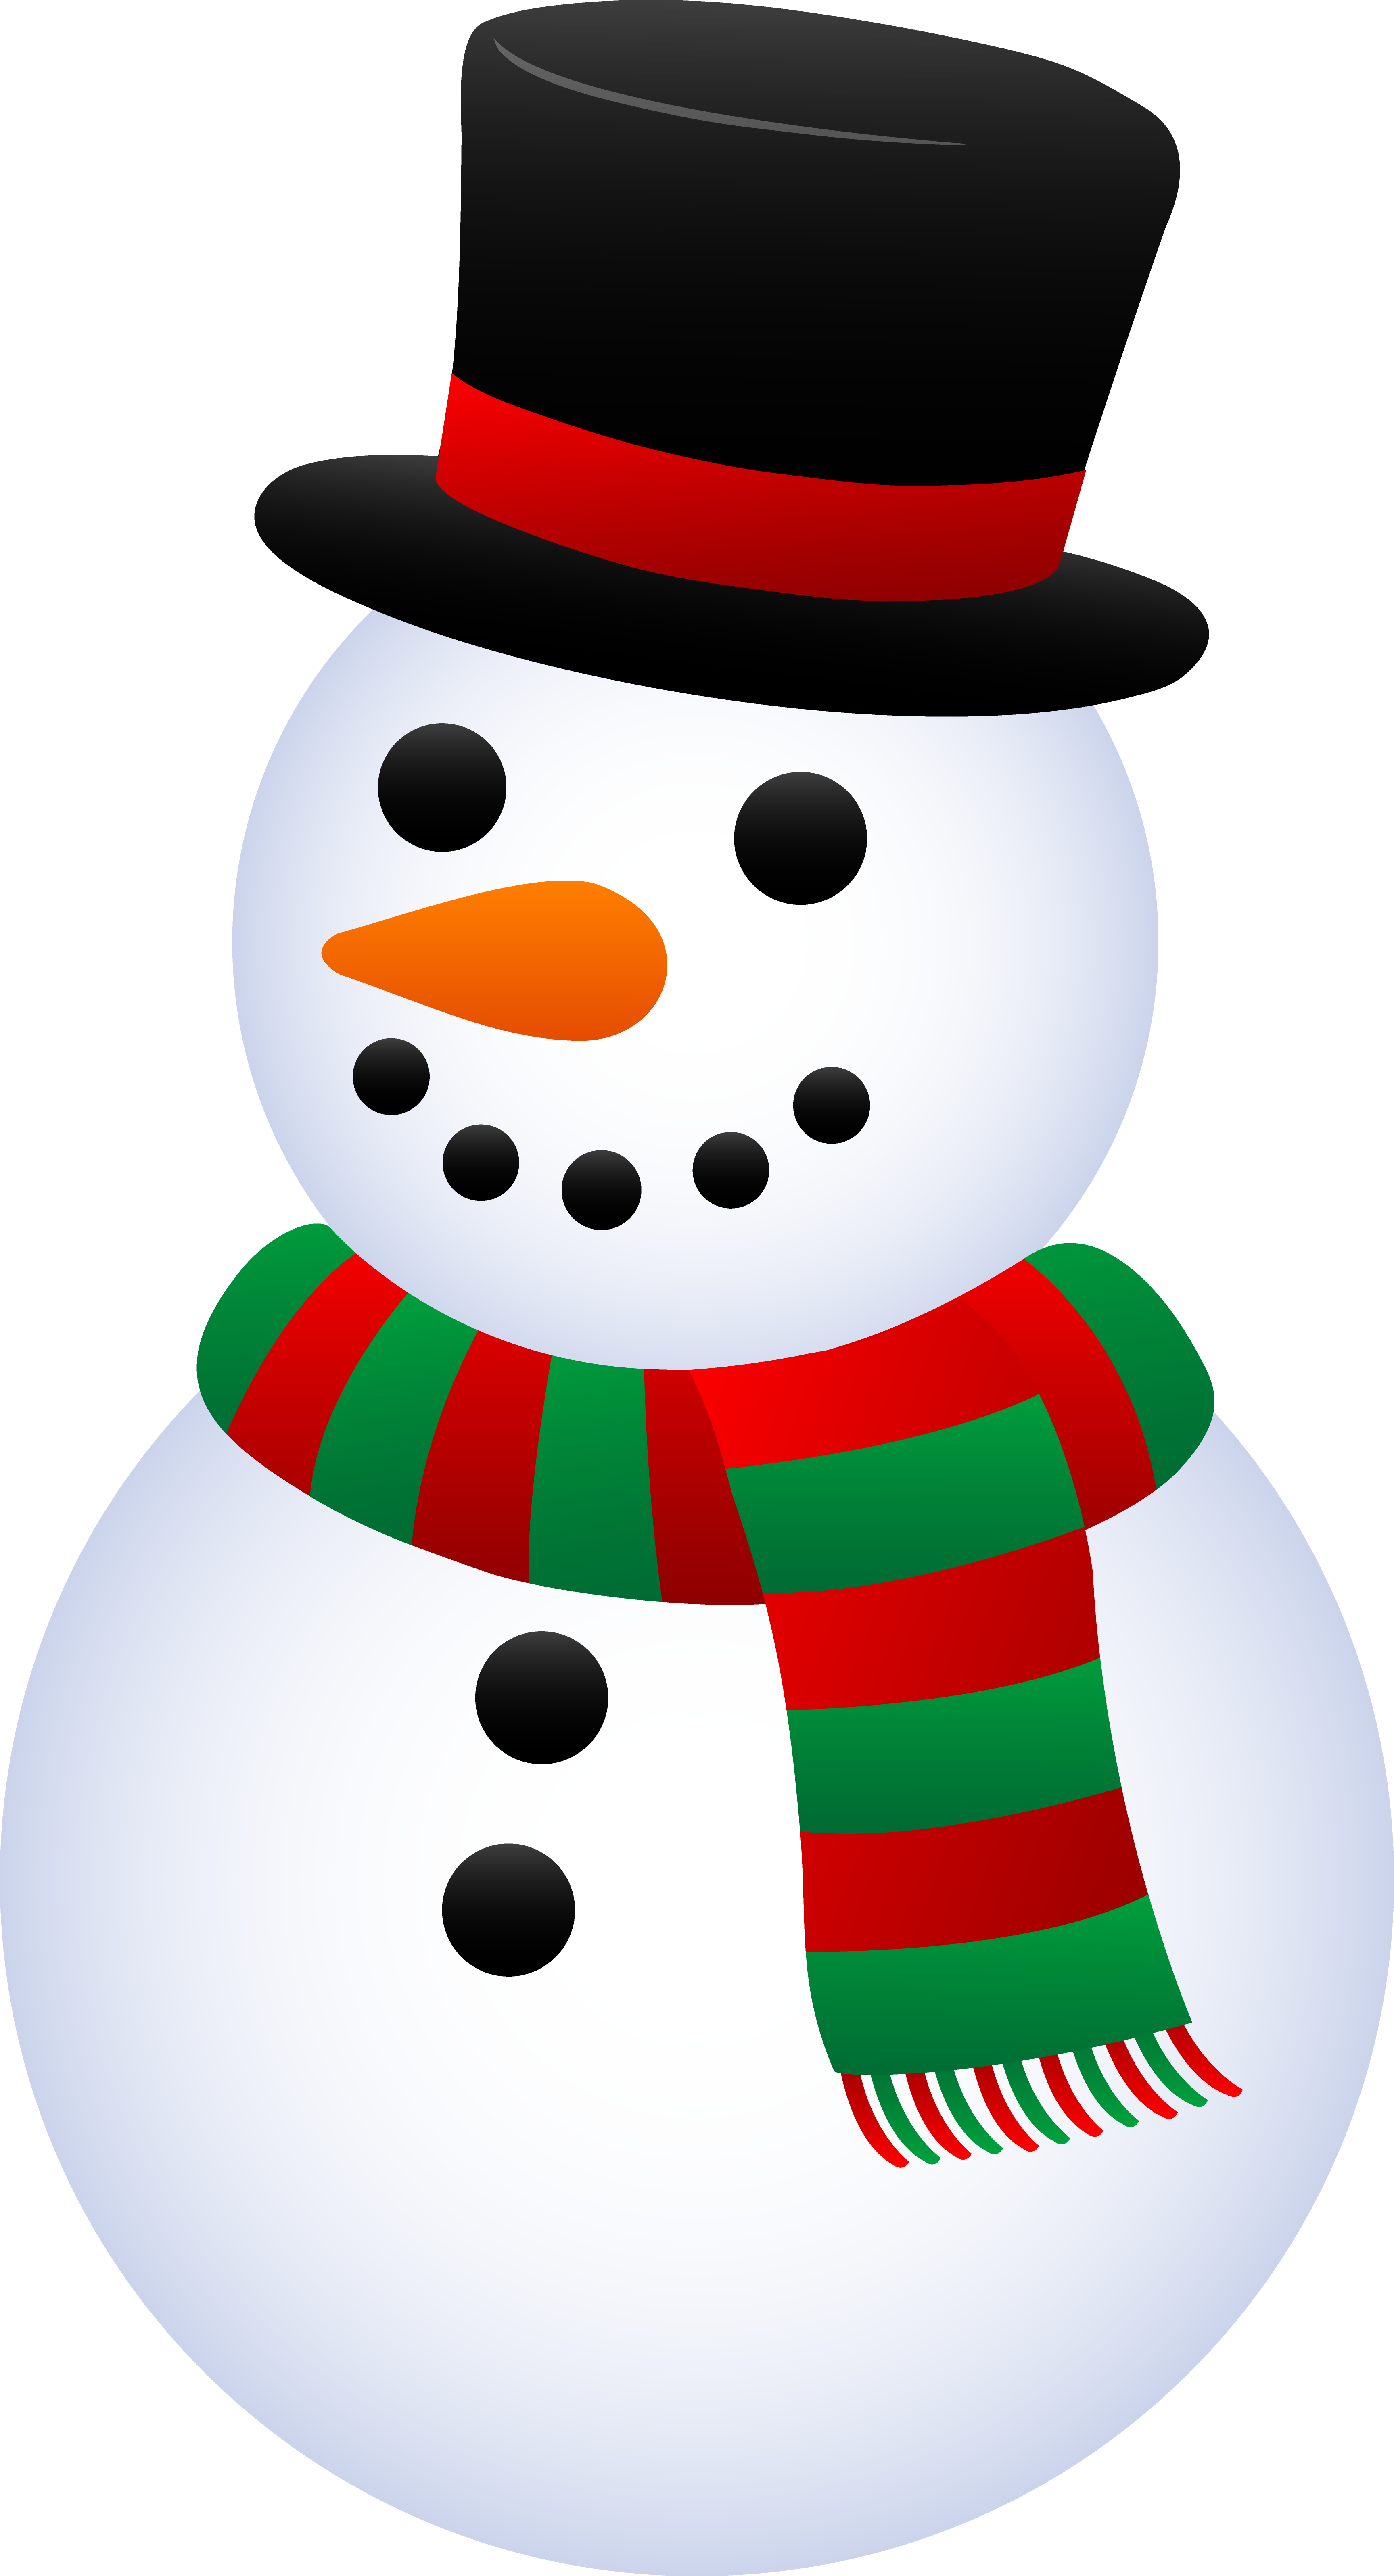 Snowman scarf clipart